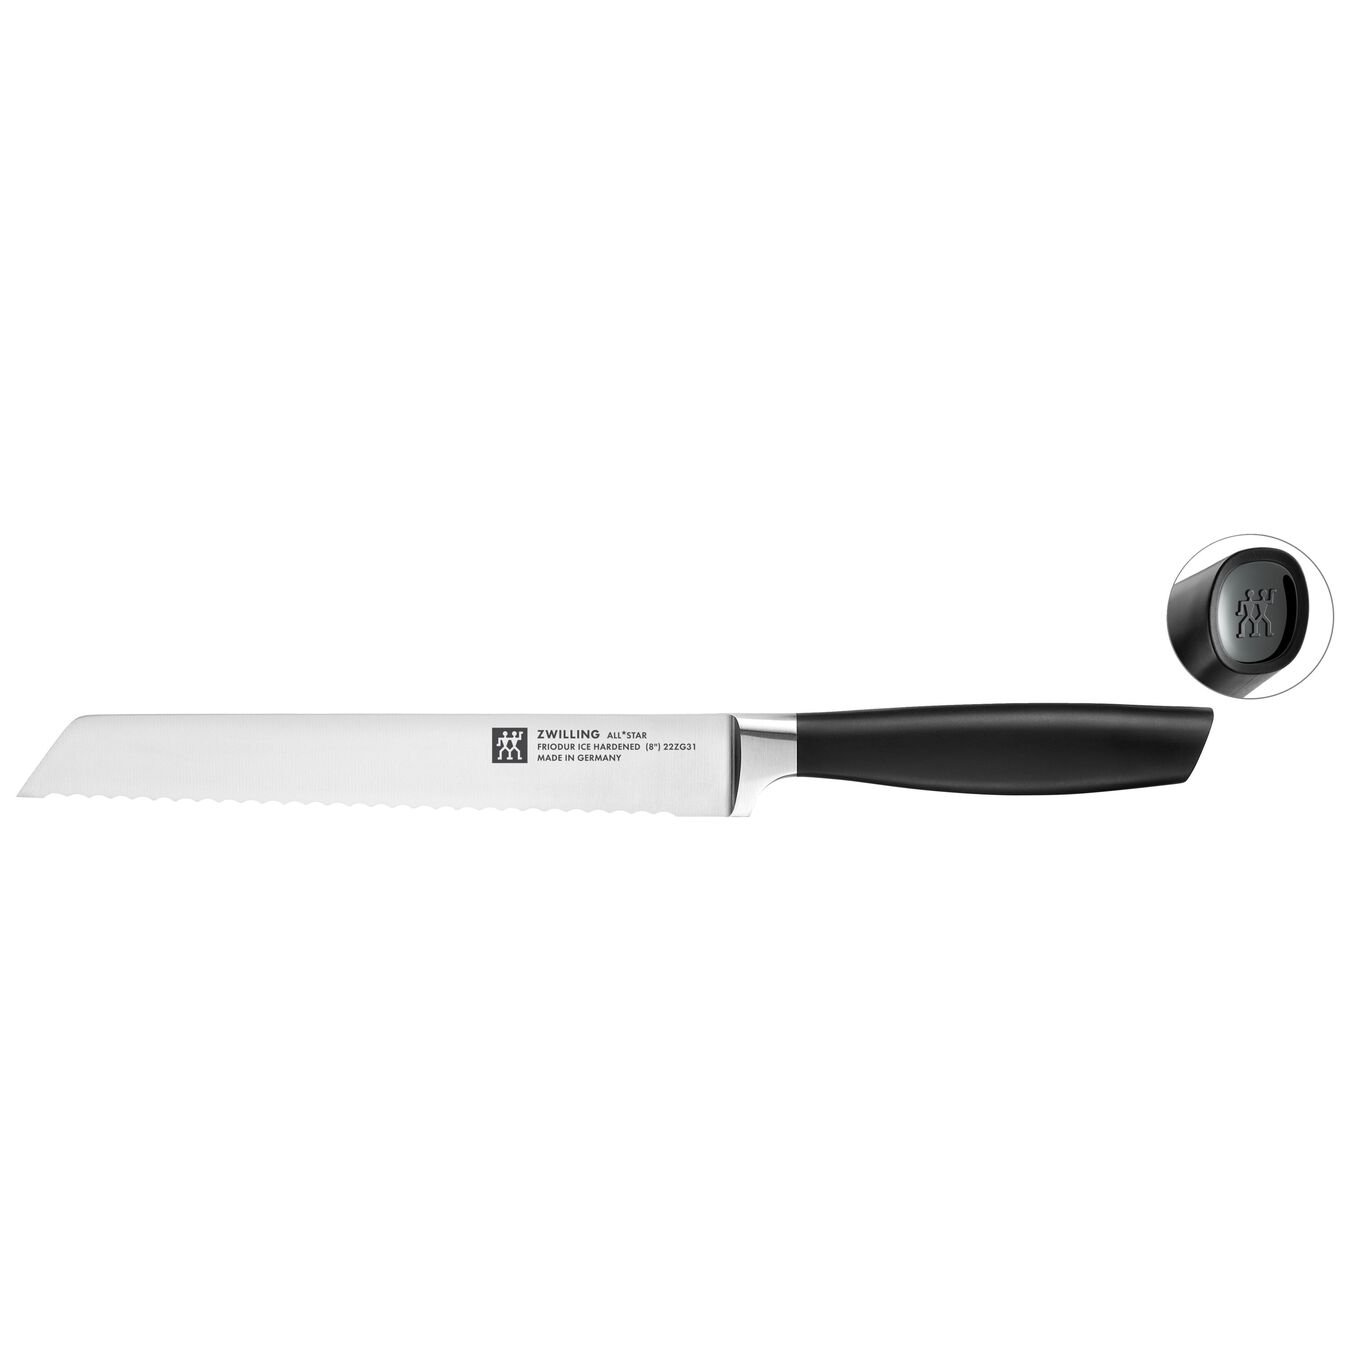 Ekmek Bıçağı 20 cm, Siyah,,large 1